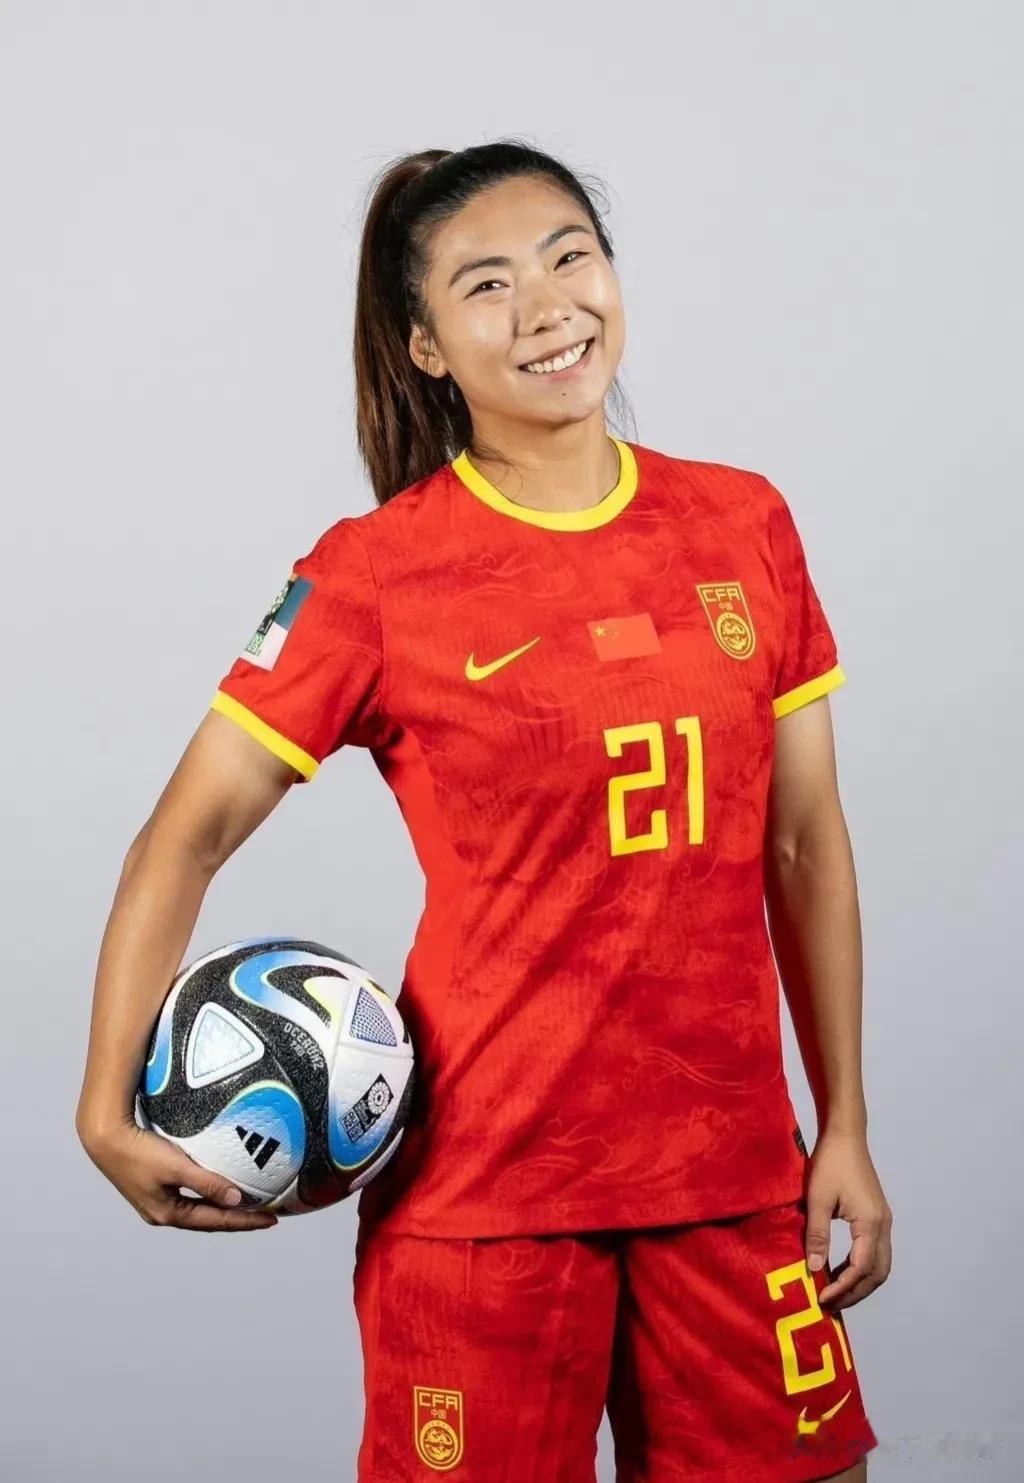 插播一条足球，给中国姑娘加油！祝中国姑娘22号世界杯首场凯旋！

分享一下姑娘们(8)